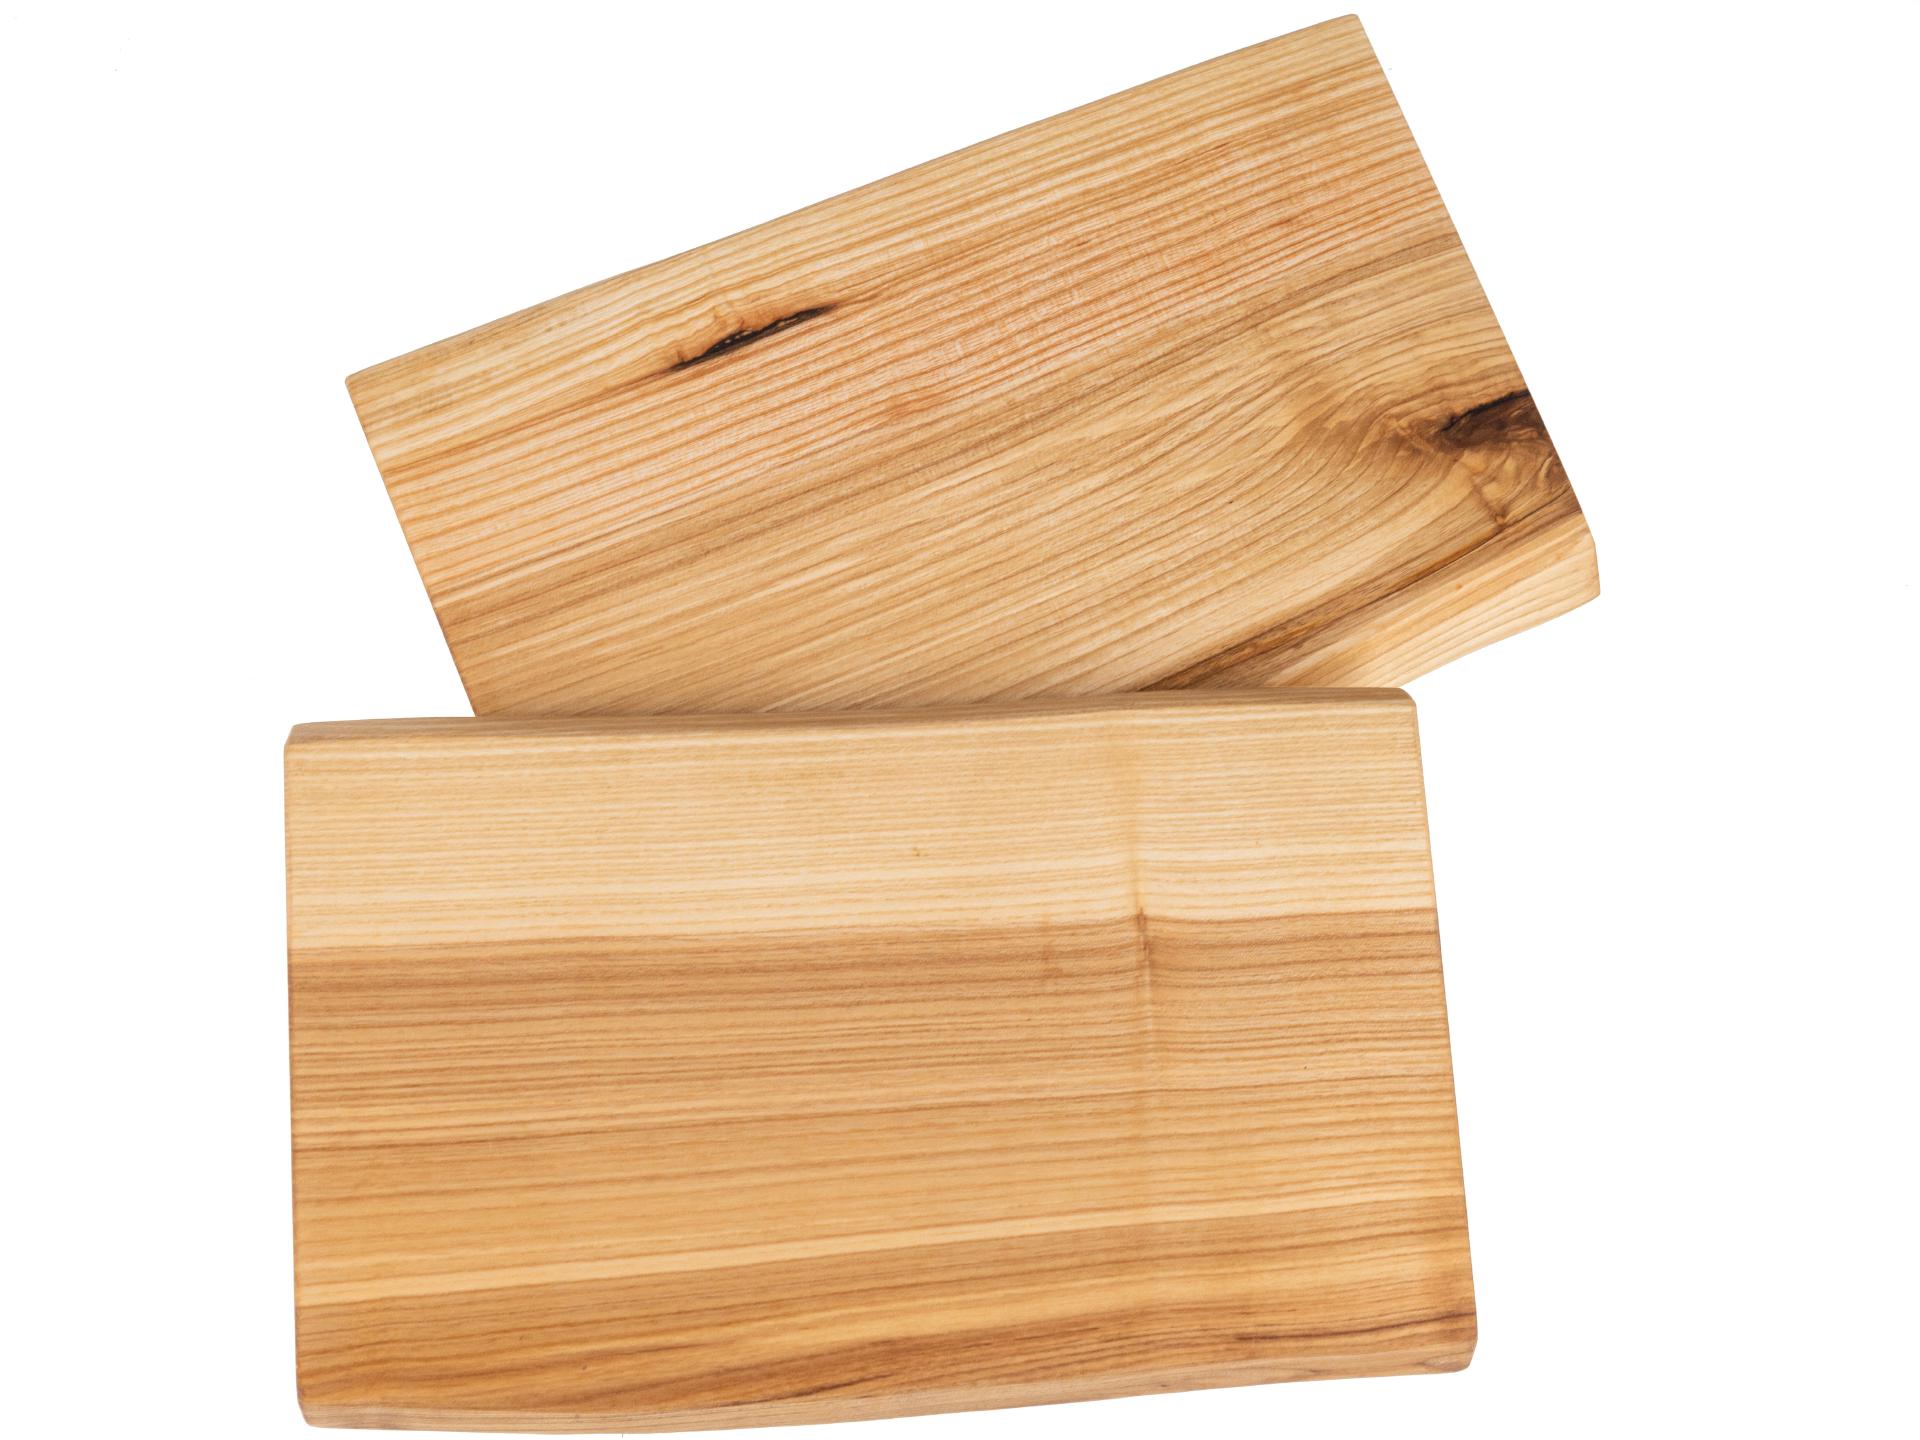 Holz Schneidebrett aus Kern Esche geölt mit Baumkante geschliffen 22mm dick 32 x 16-18 cm